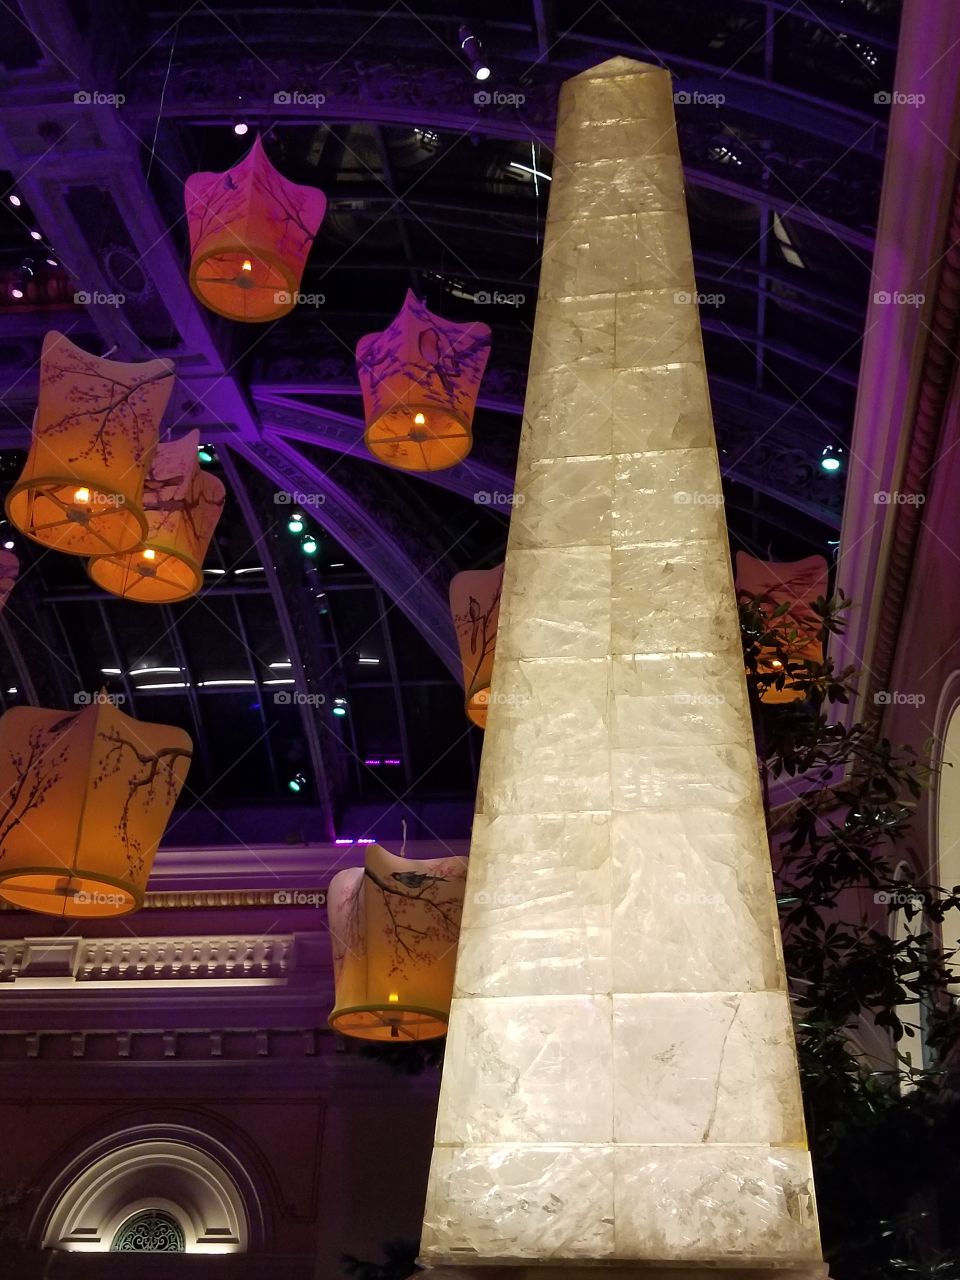 inside the Bellagio hotel arboretum in Las Vegas